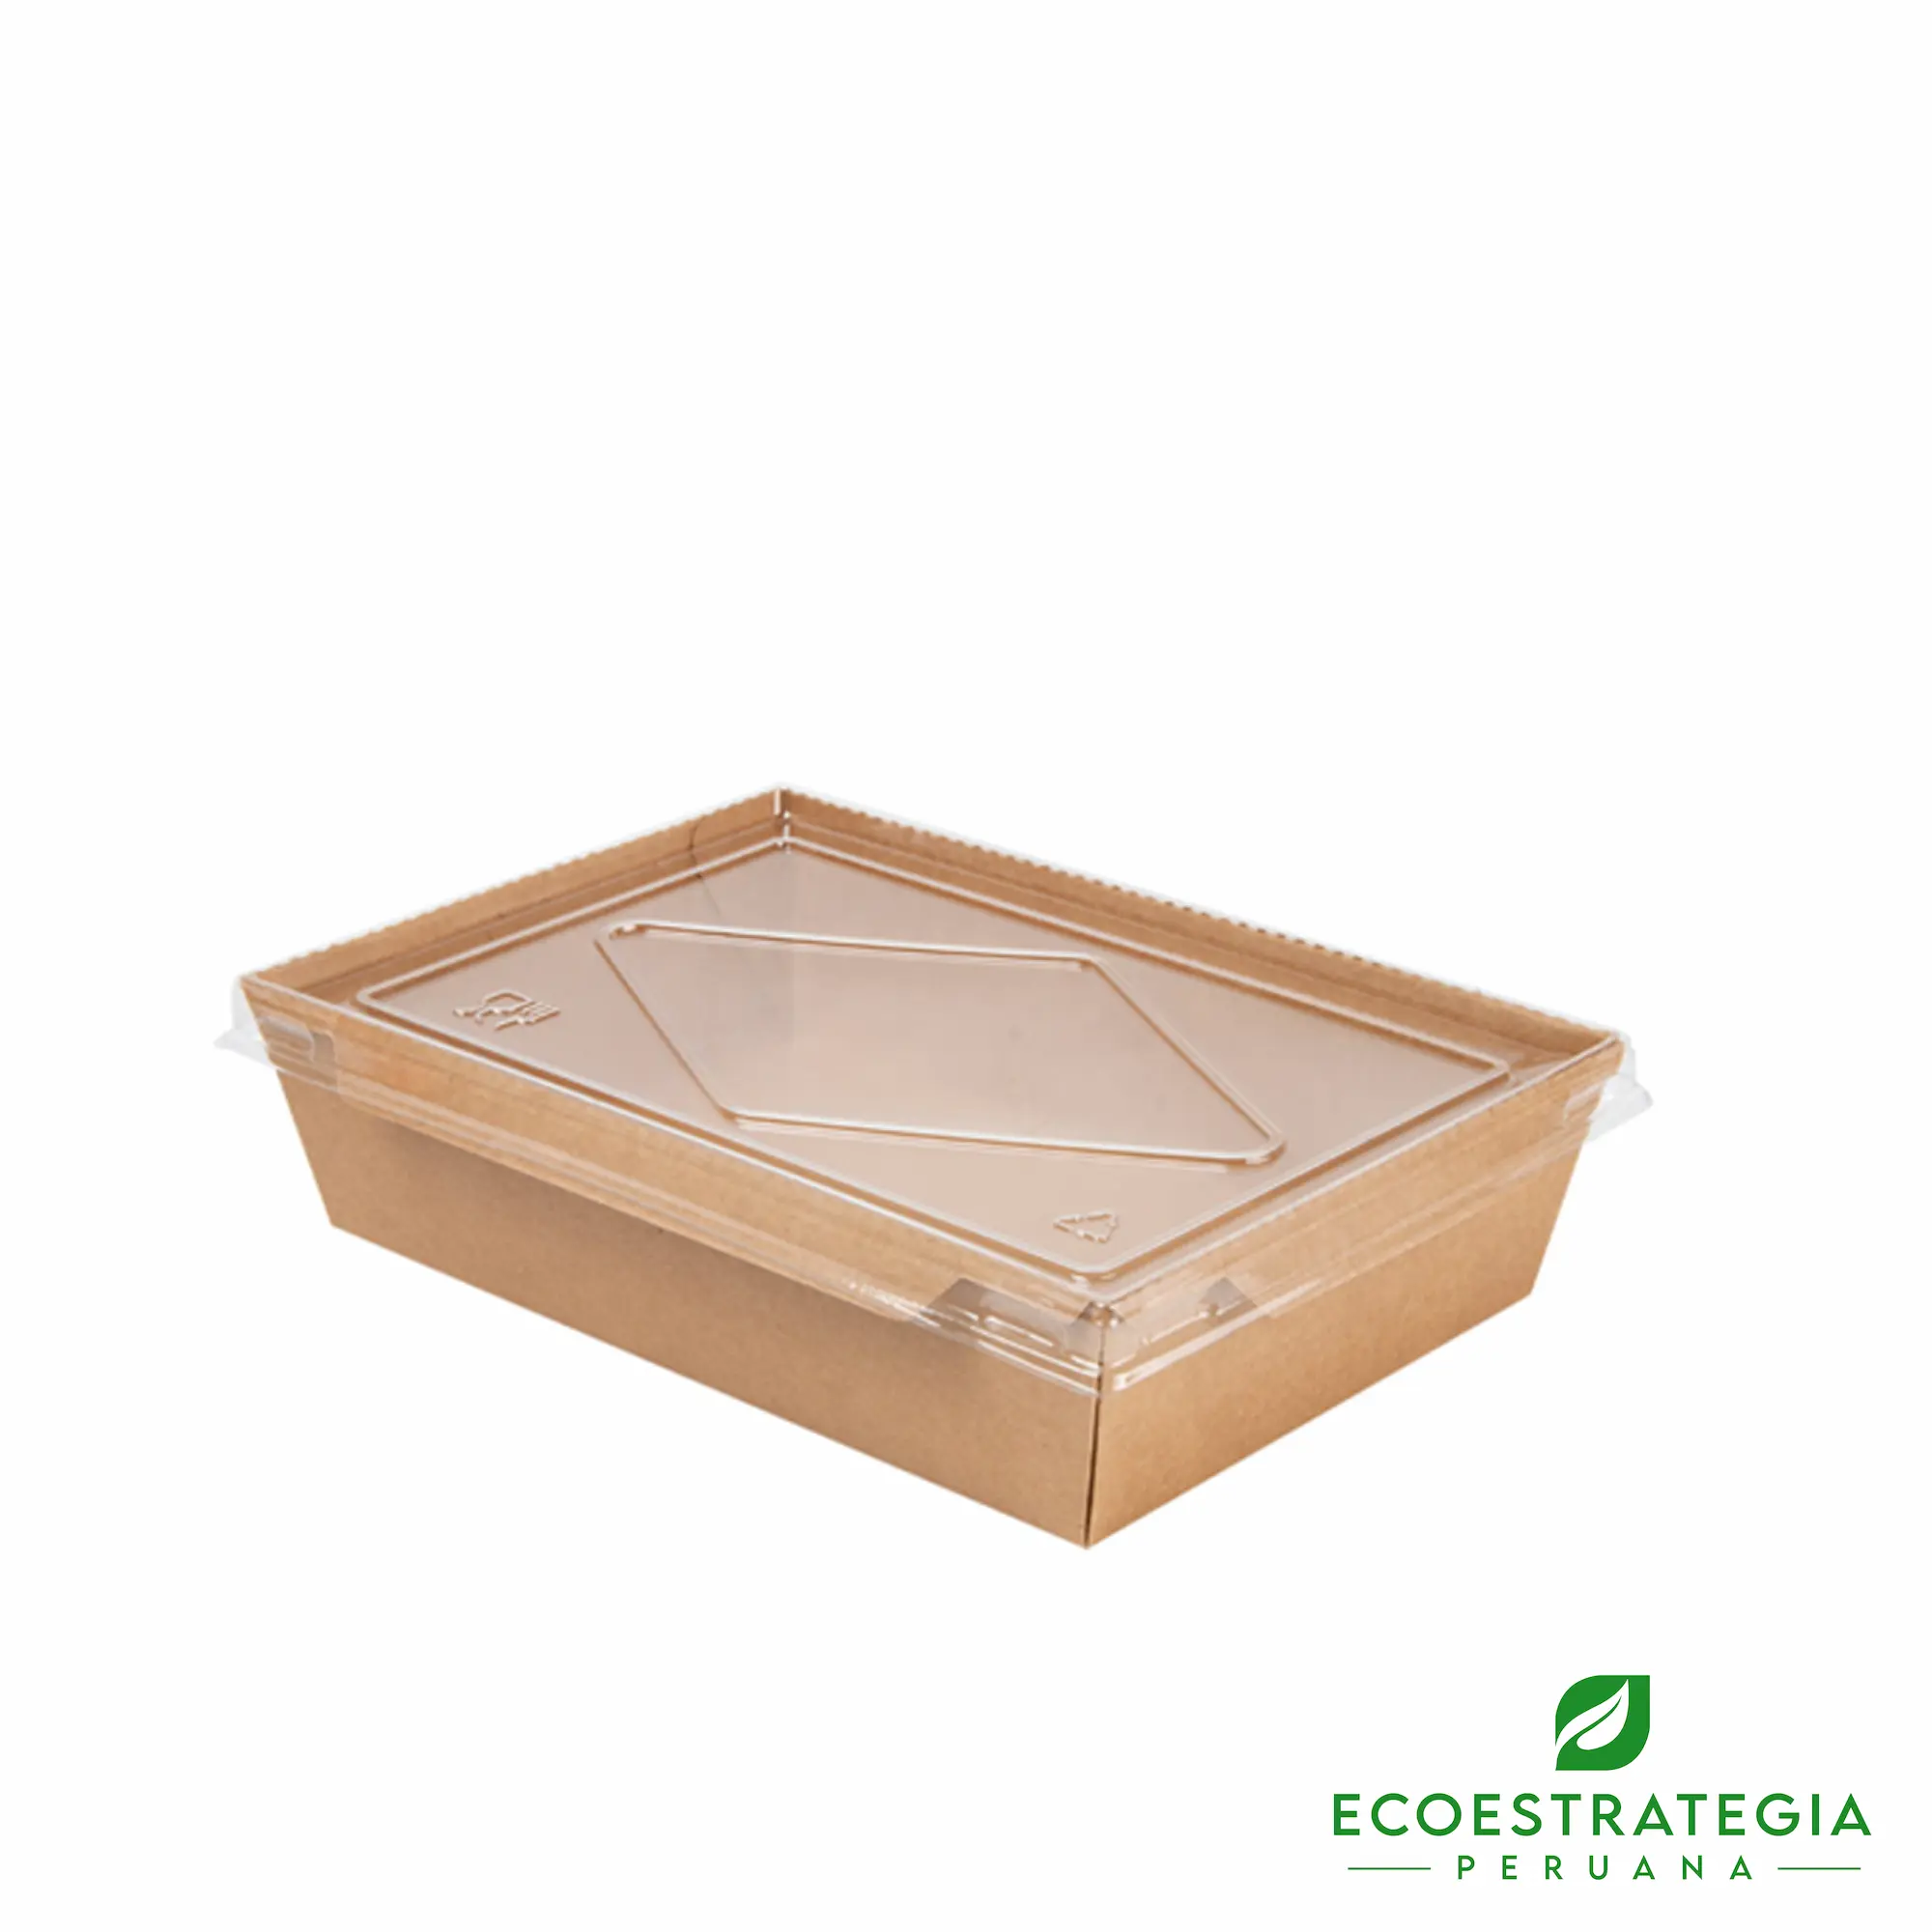 Esta bandeja biodegradable está hecho de cartón Kraft y tiene una capacidad de 900ml. Envases descartables con gramaje ideal, cotiza tus tapers ecológicos.